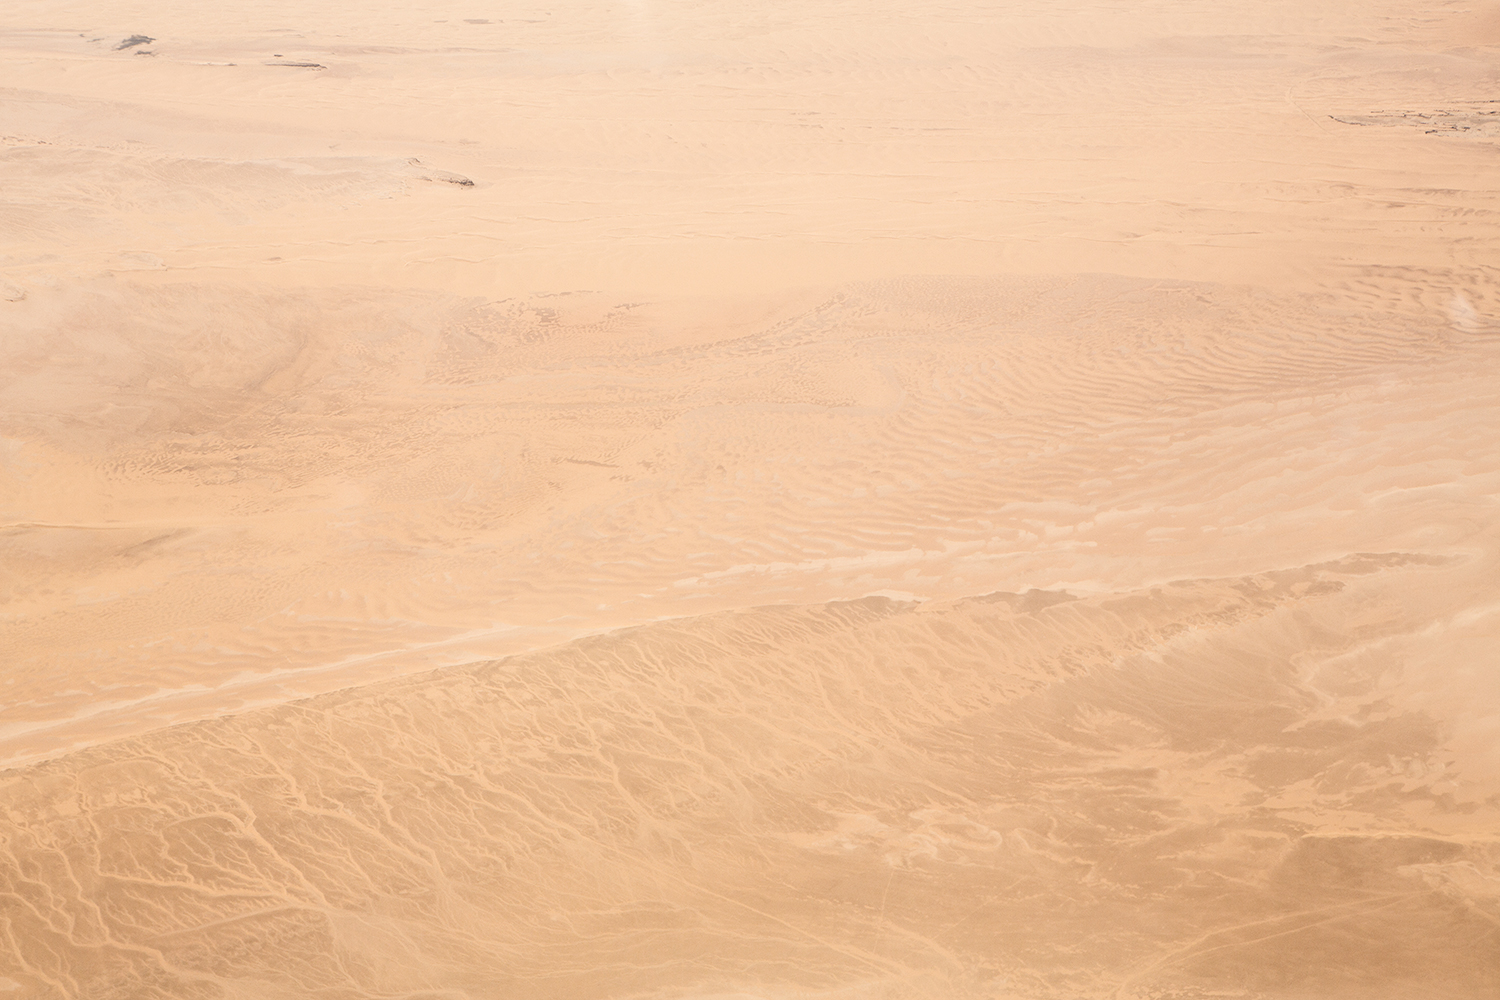  Deserts III, 2015 //  120 cm x 180 cm  